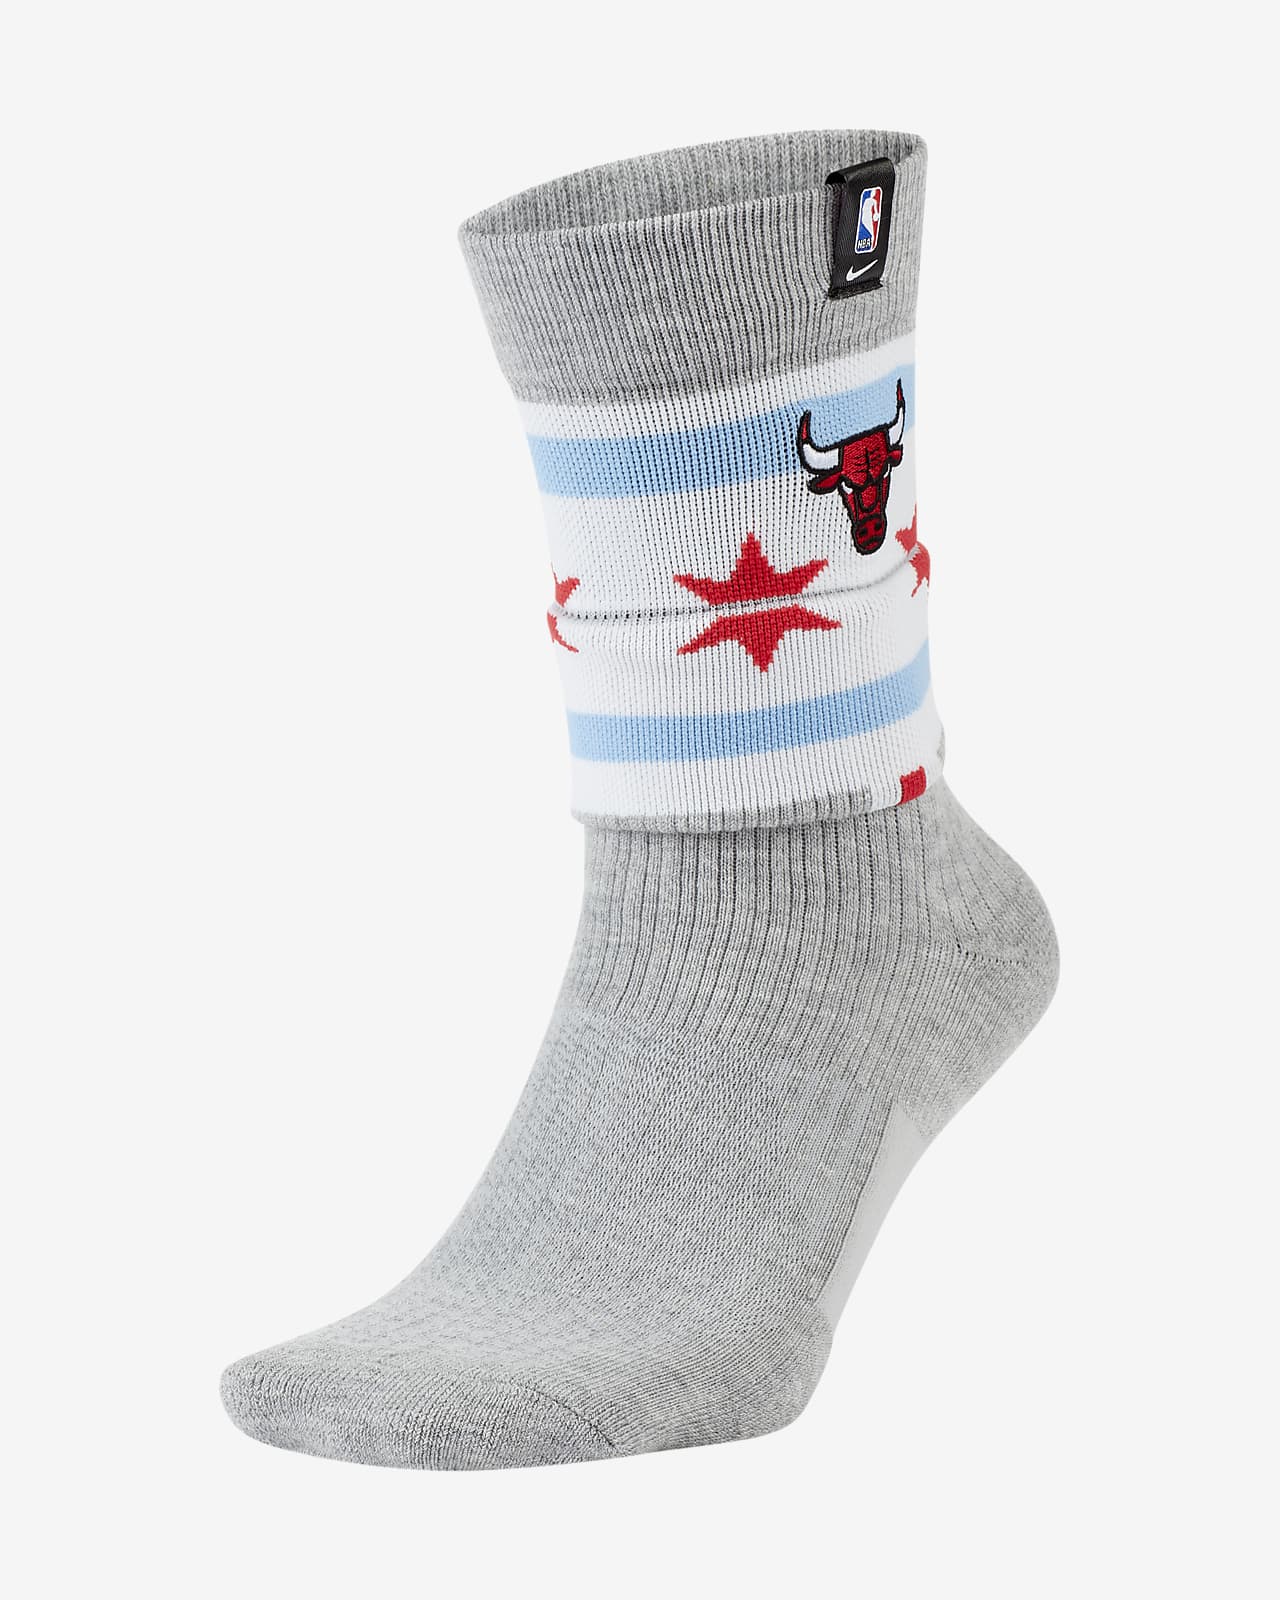 chicago bulls nike elite socks